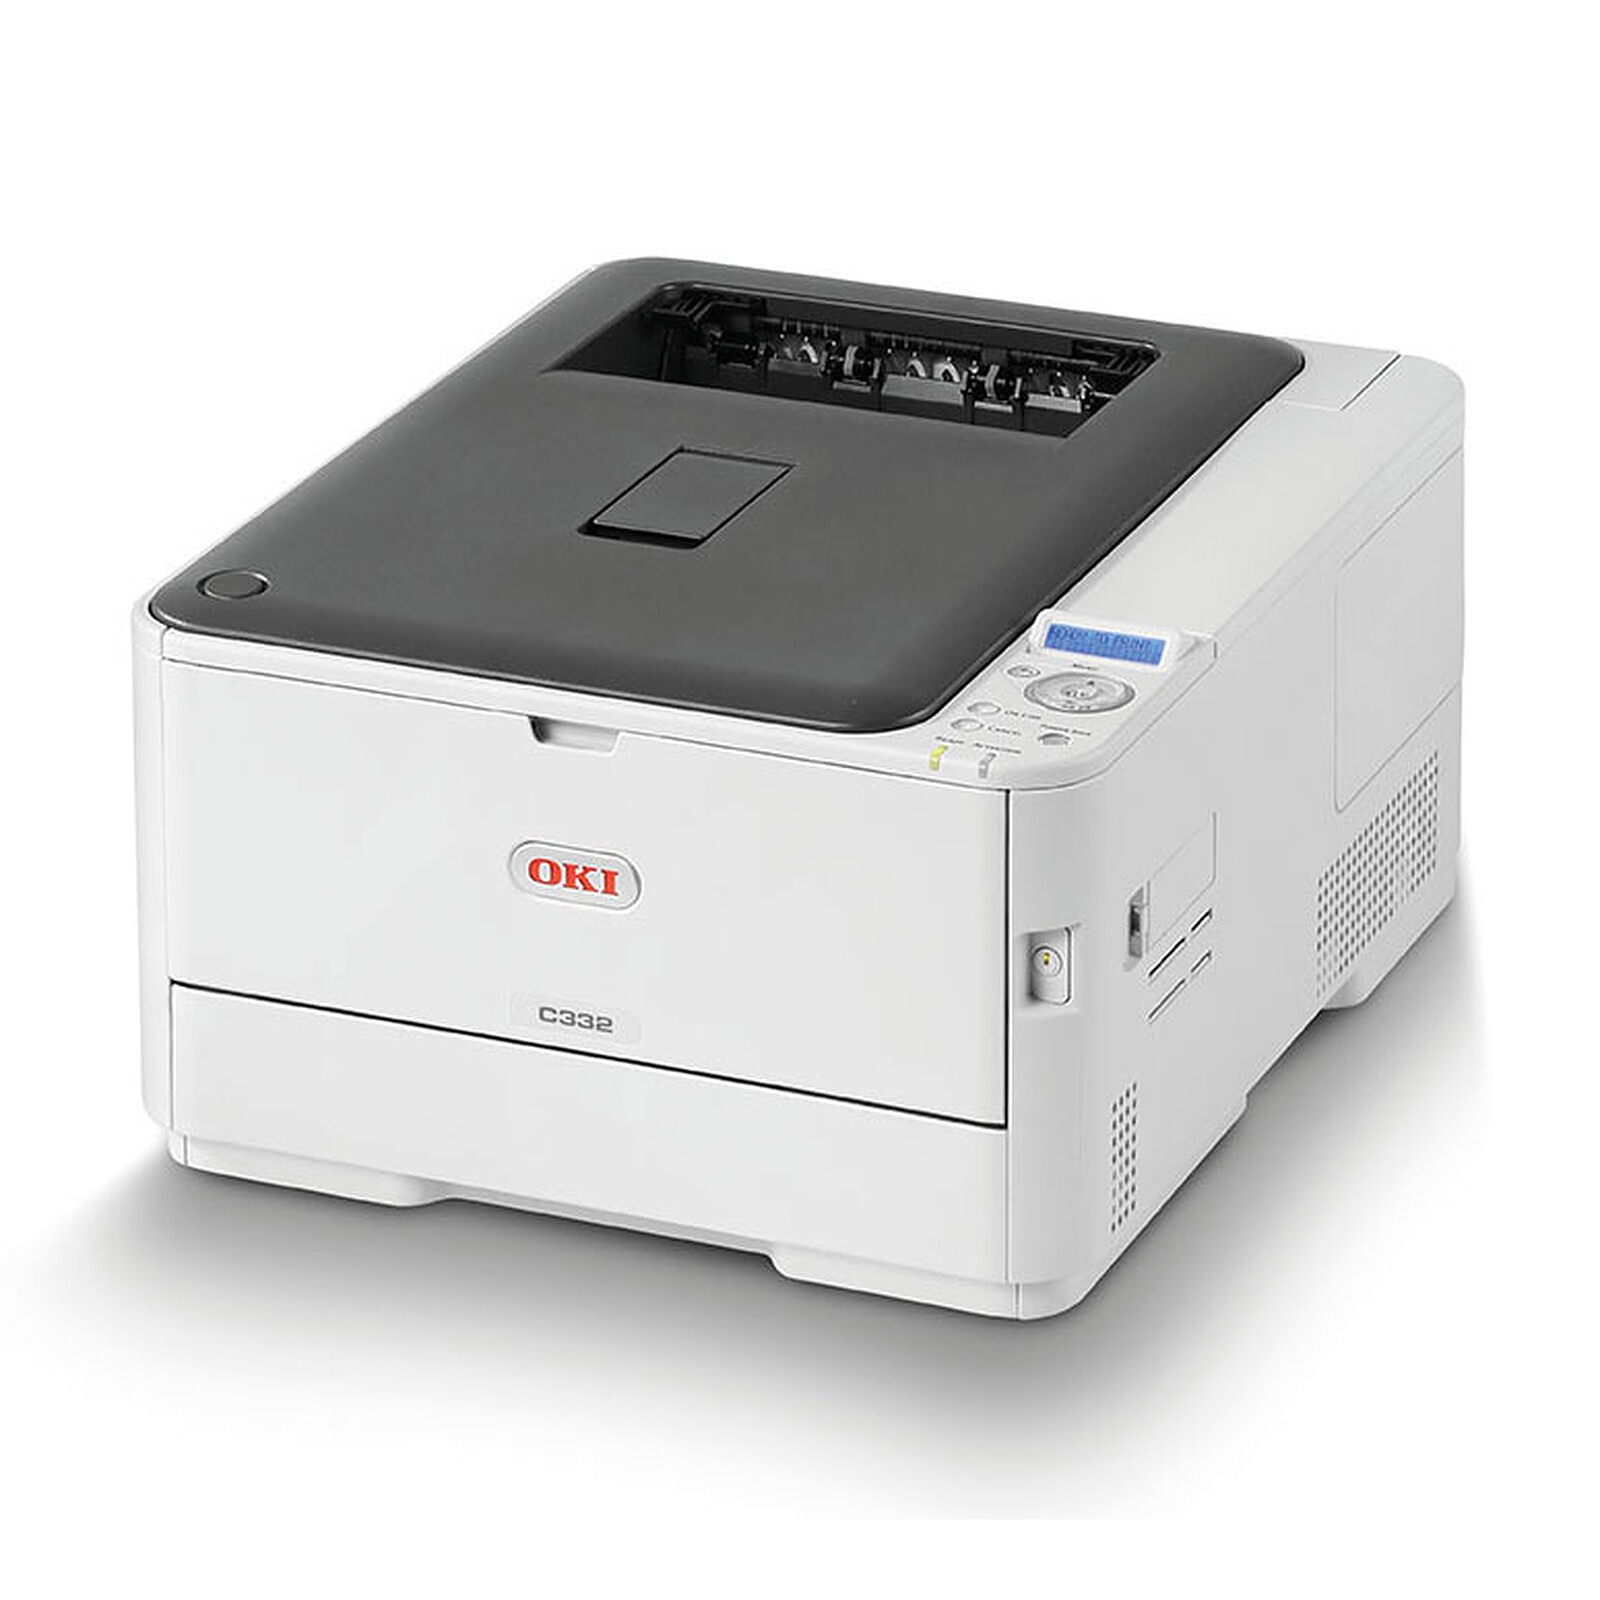 Impresora HP M110we, la unidad Láser más pequeña del mercado Imprimante